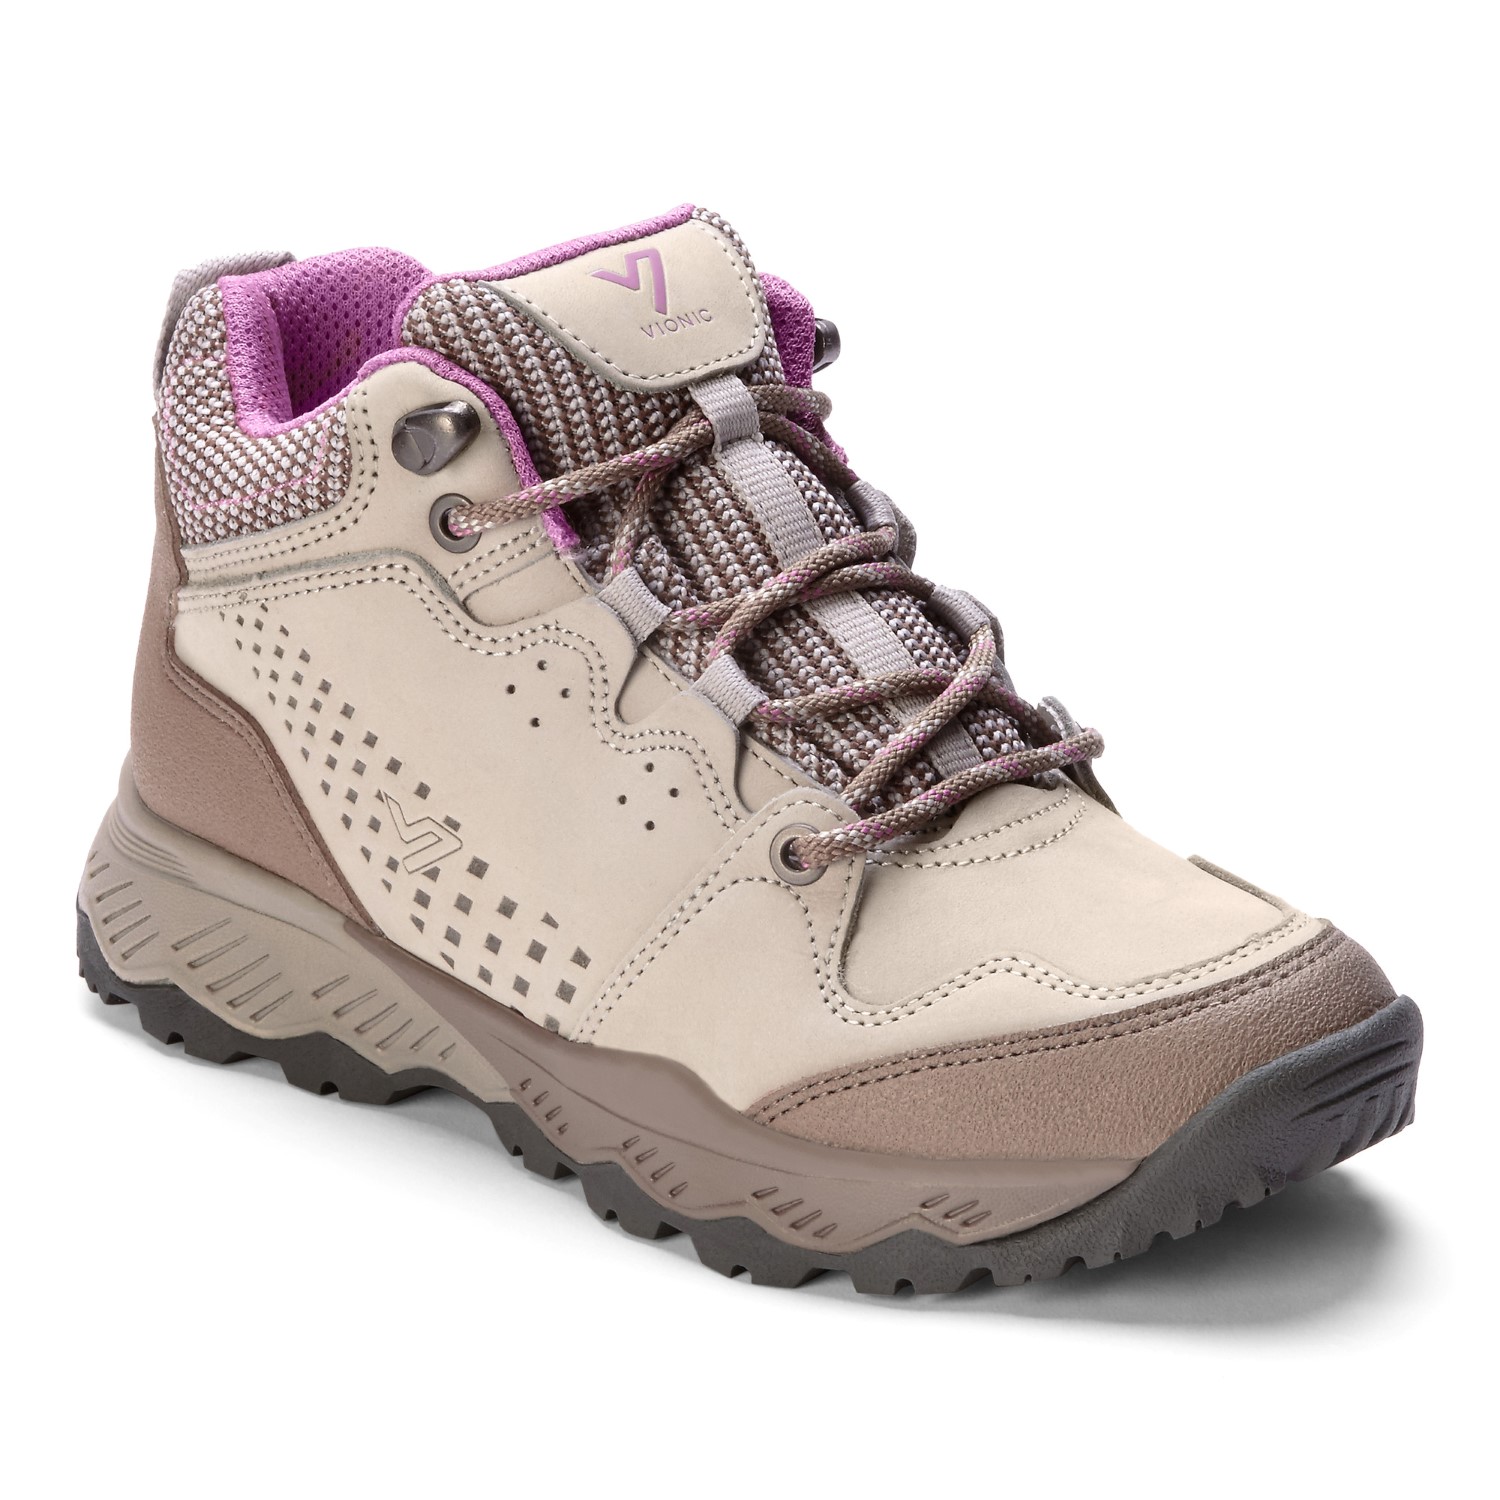 vionic womens hiking boots